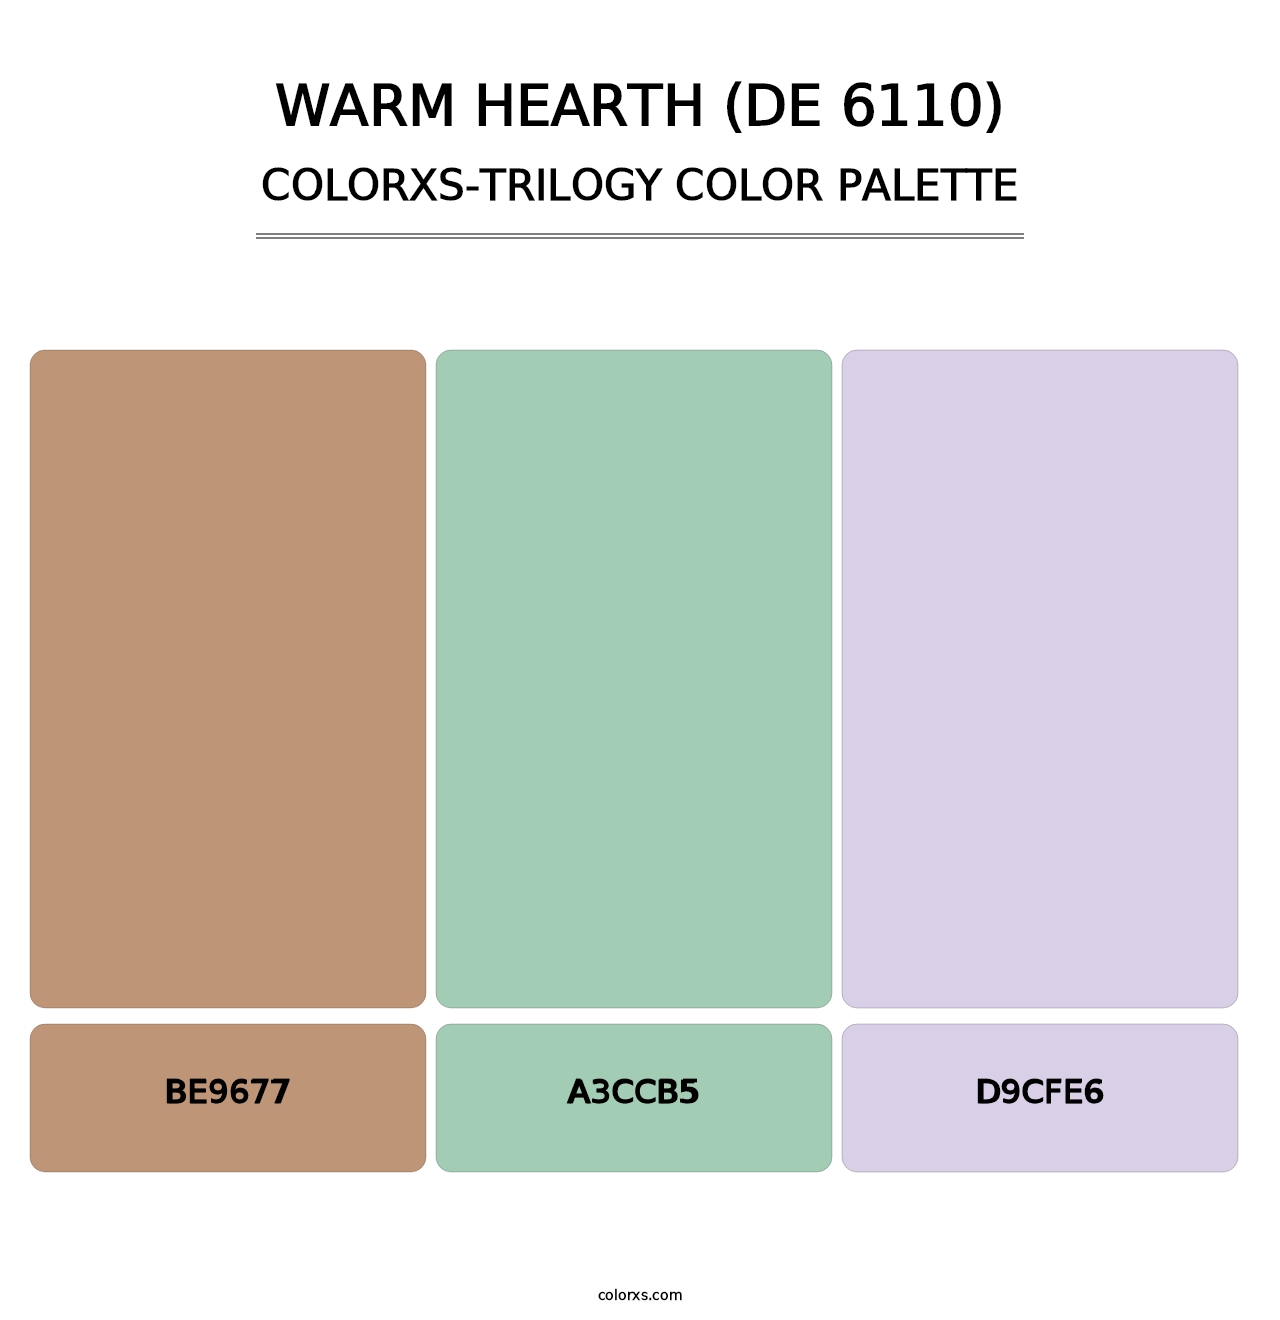 Warm Hearth (DE 6110) - Colorxs Trilogy Palette